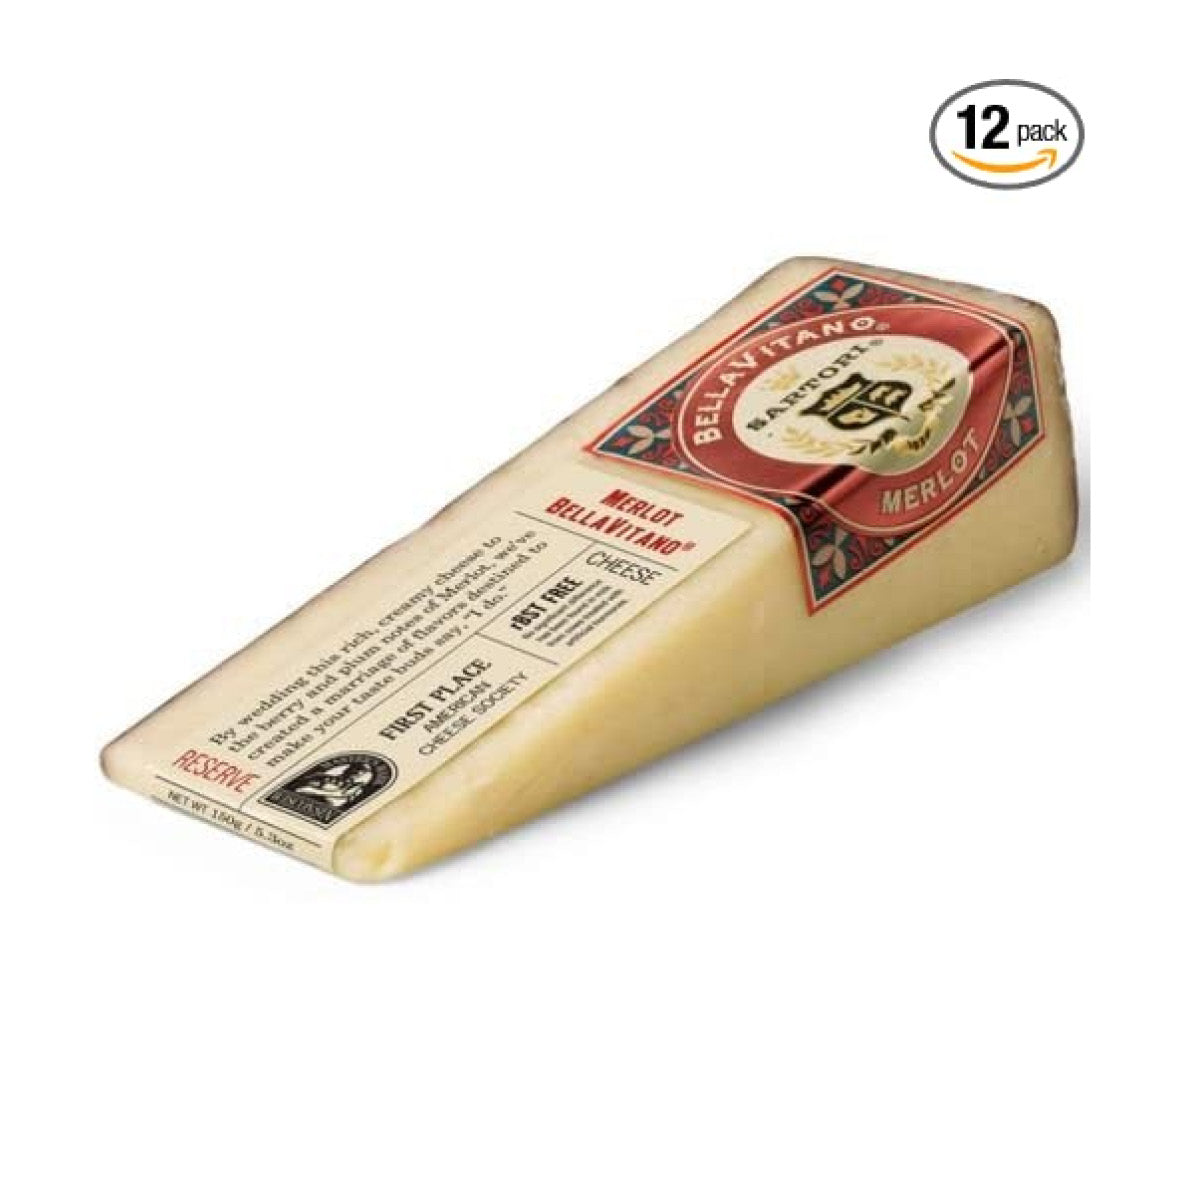 Bellavitano Merlot Cheese Wedge, 150g